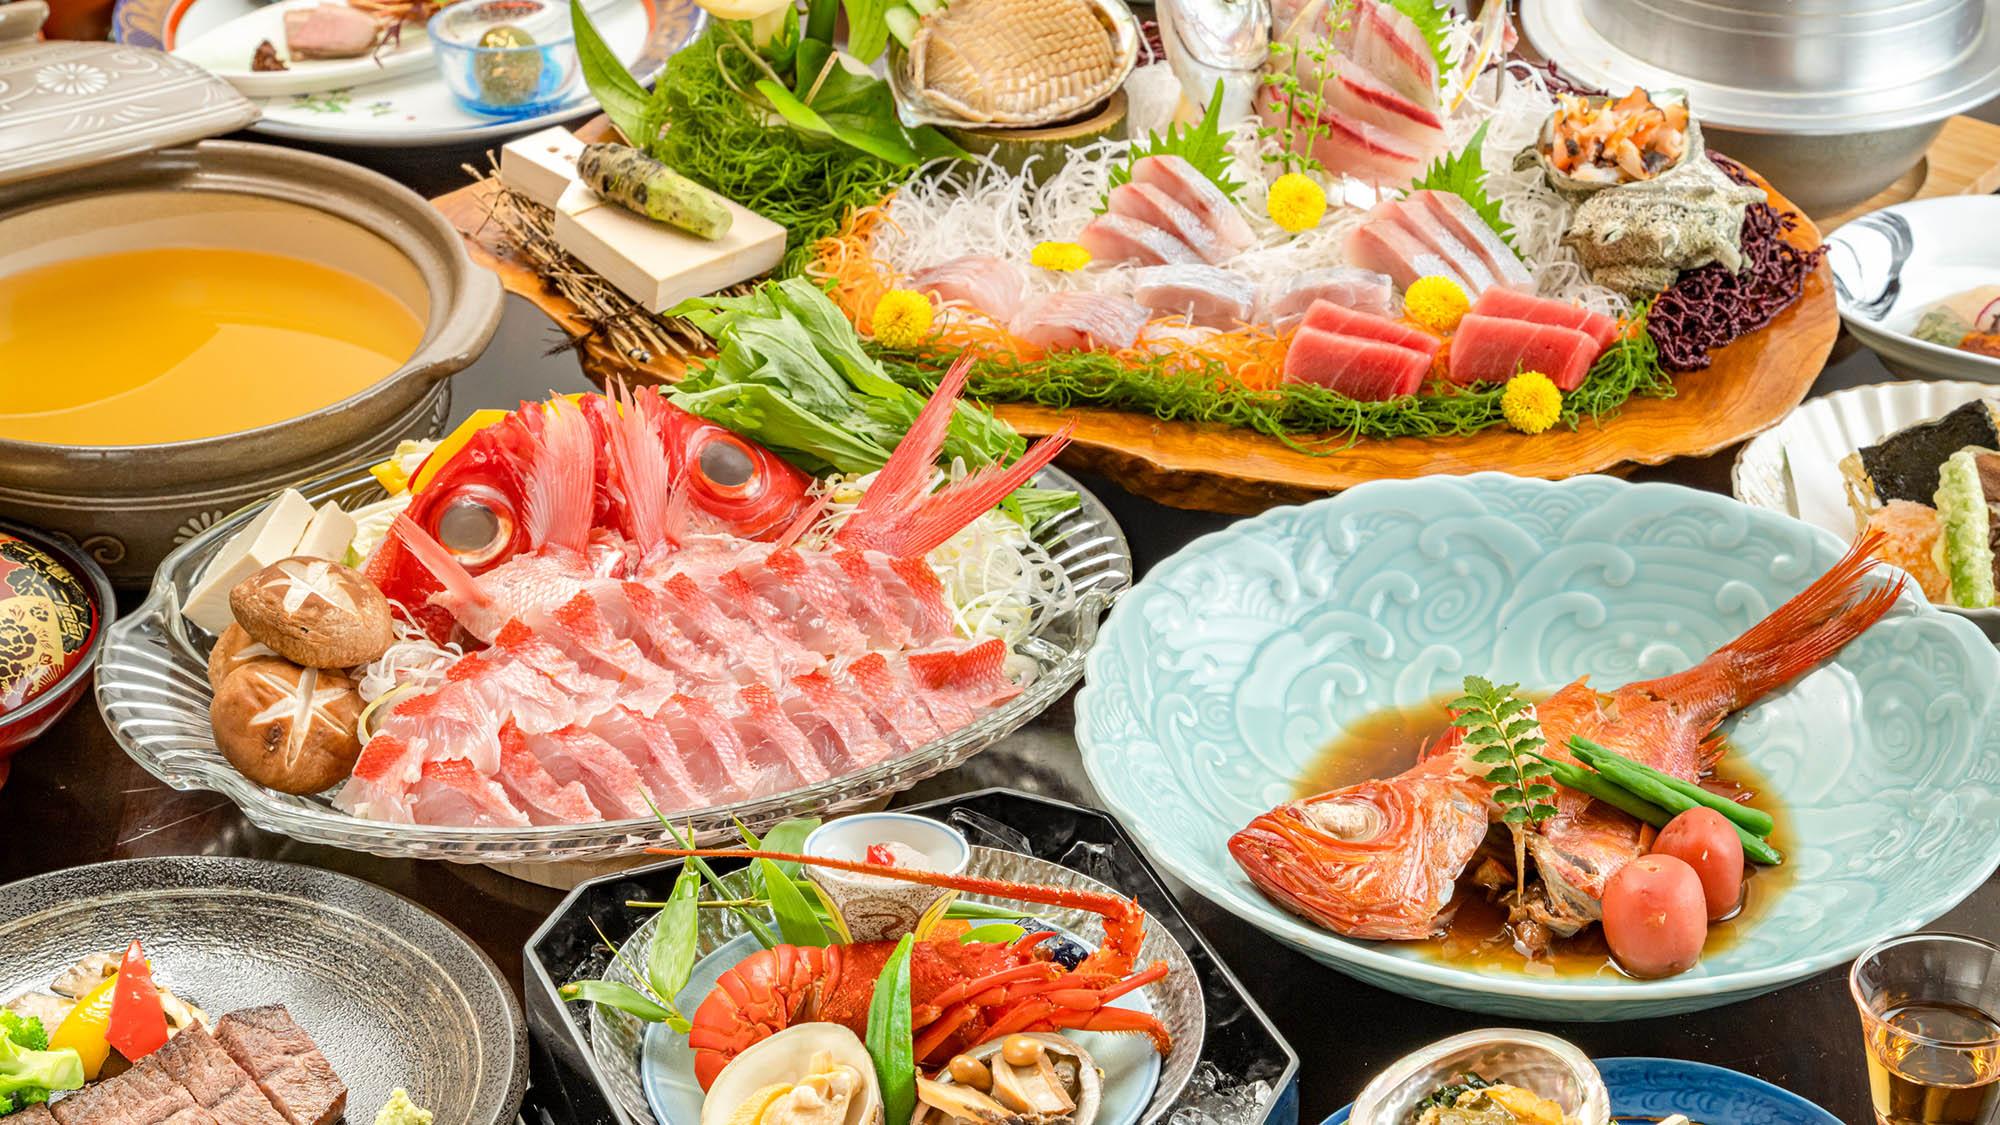 ・【食事一例】地元産の味わいたっぷりな金目鯛料理を存分にお楽しみください